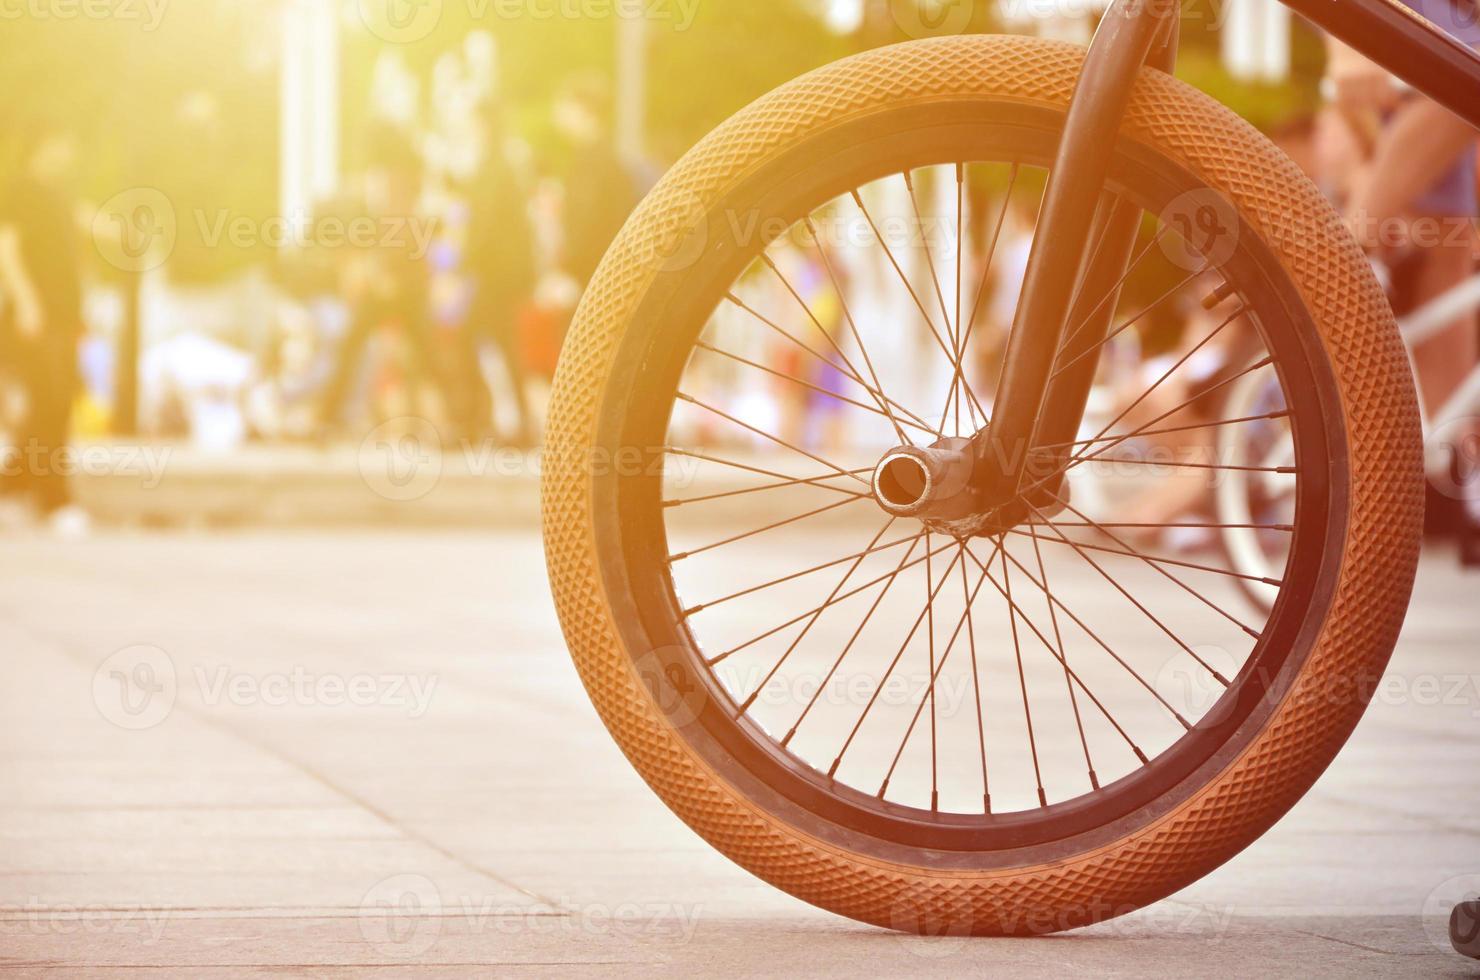 uma roda de bicicleta bmx no contexto de uma rua turva com ciclistas. conceito de esportes radicais foto